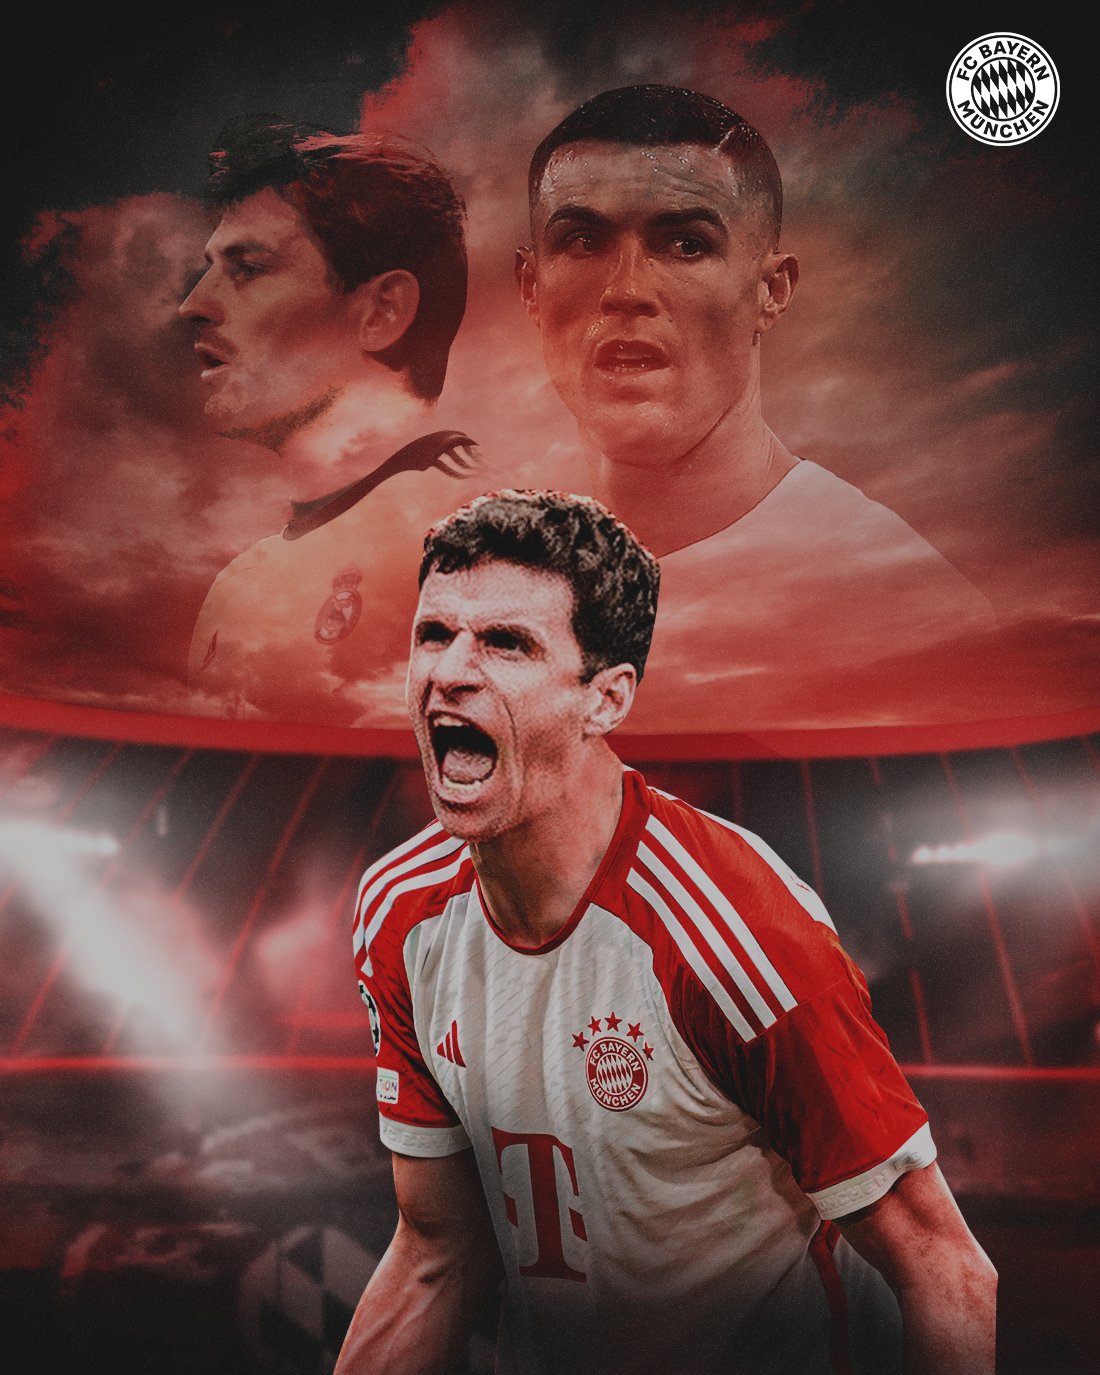 Thomas Muller wants to surpass Cristiano Ronaldo after Bayern Munich win dramatic Man Utd 4-3